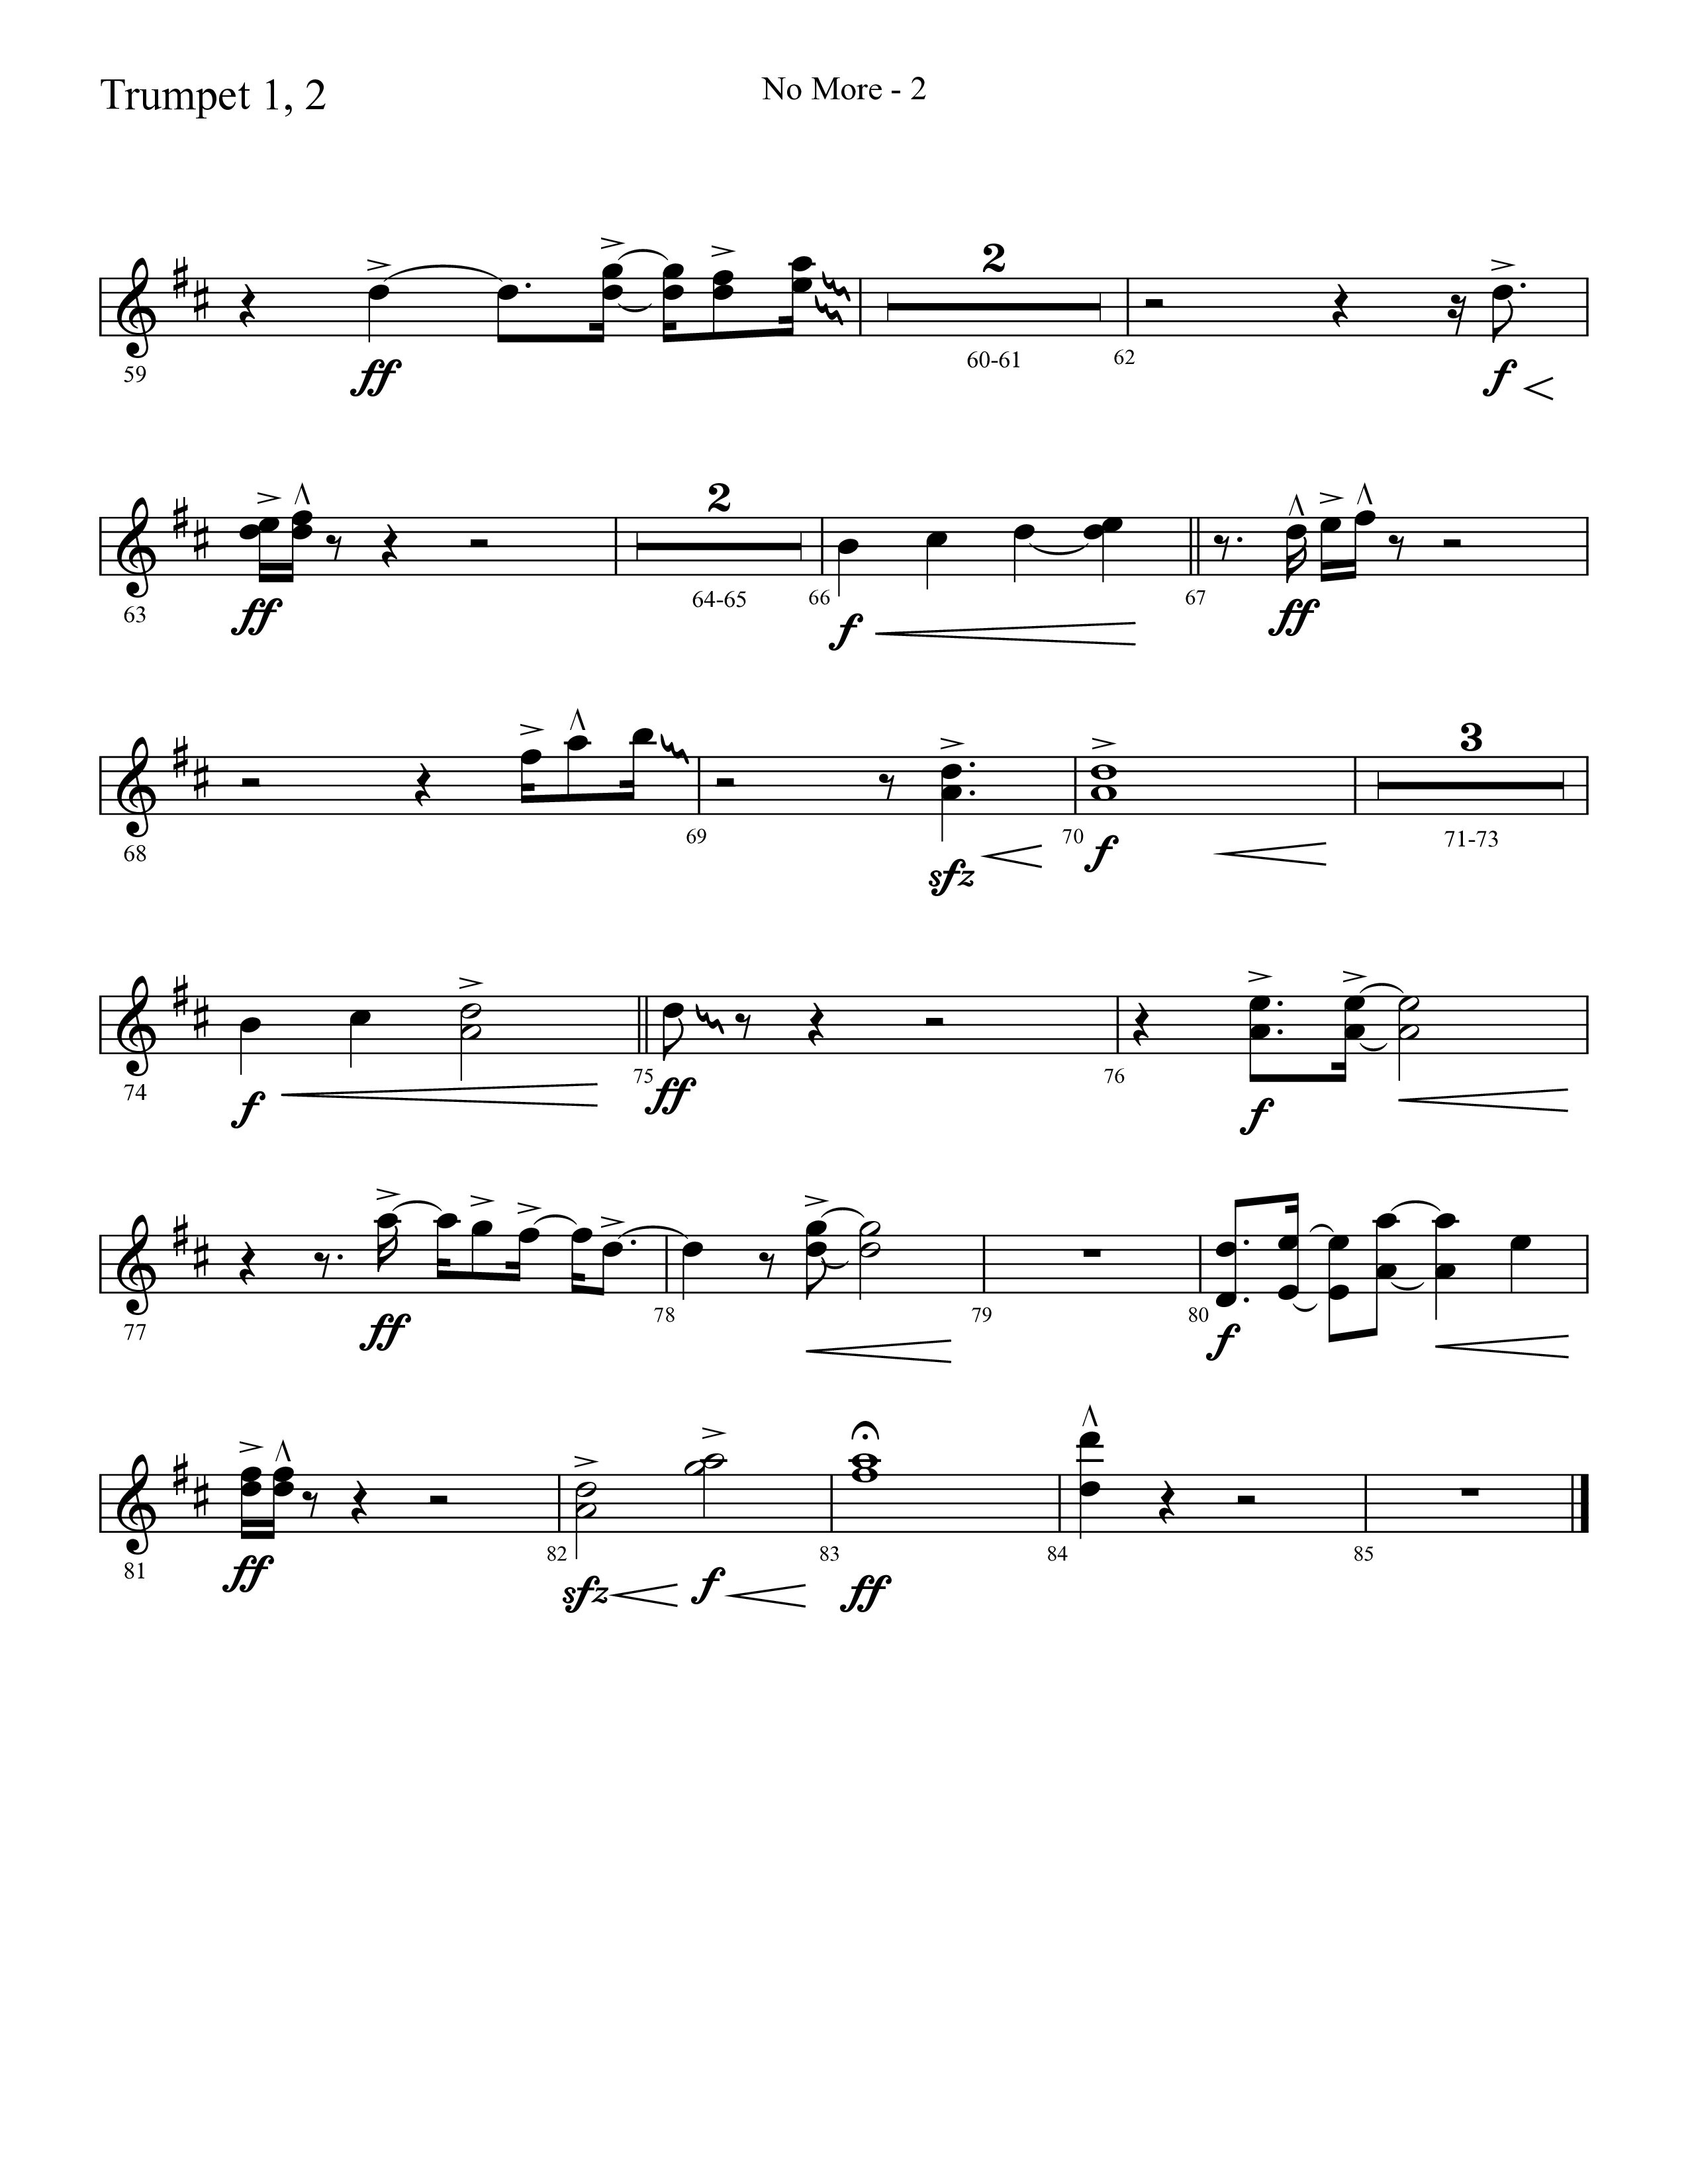 No More (Choral Anthem SATB) Trumpet 1,2 (Lifeway Choral / Arr. Cliff Duren)